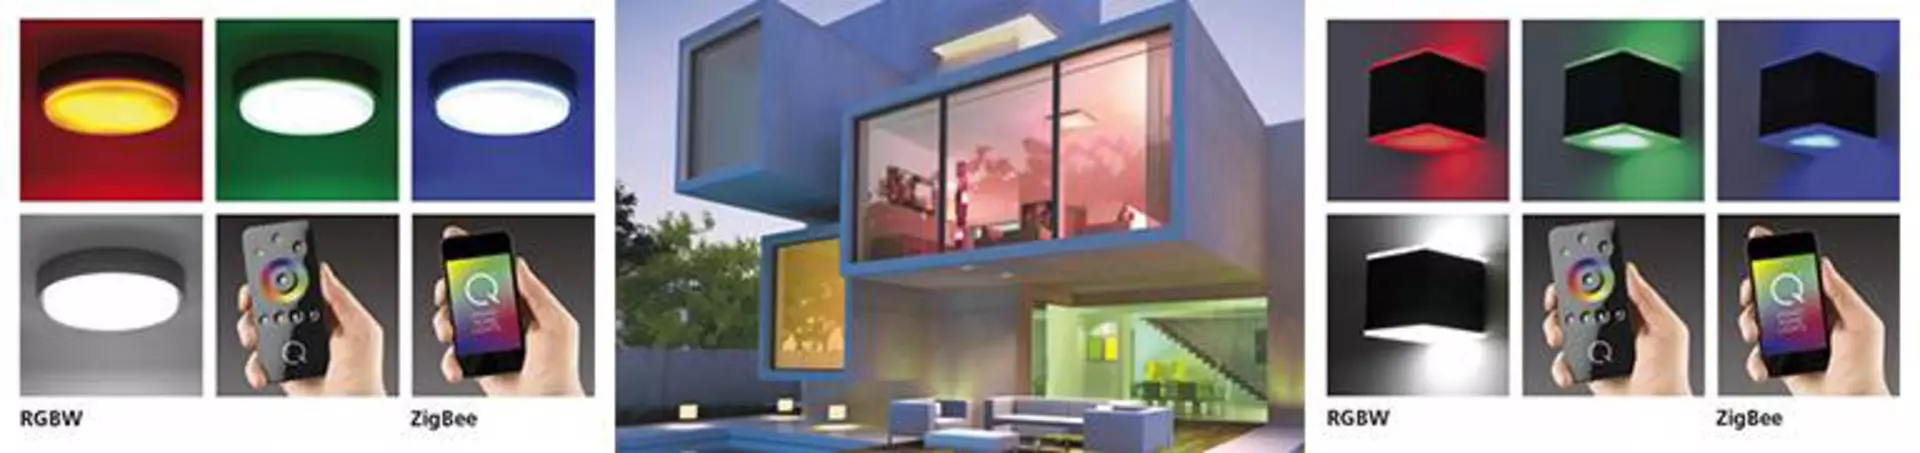 Bannerbild zur Steuerung der Smart-Home-Leuchten. Links und rechts sind Lampen in unterschiedlichen Farben zu sehen. In der Mitte ist ein geometrisches Haus von außen zu sehen, as dessen Fenster unterschiedlich farbige Lichter erstrahlen.